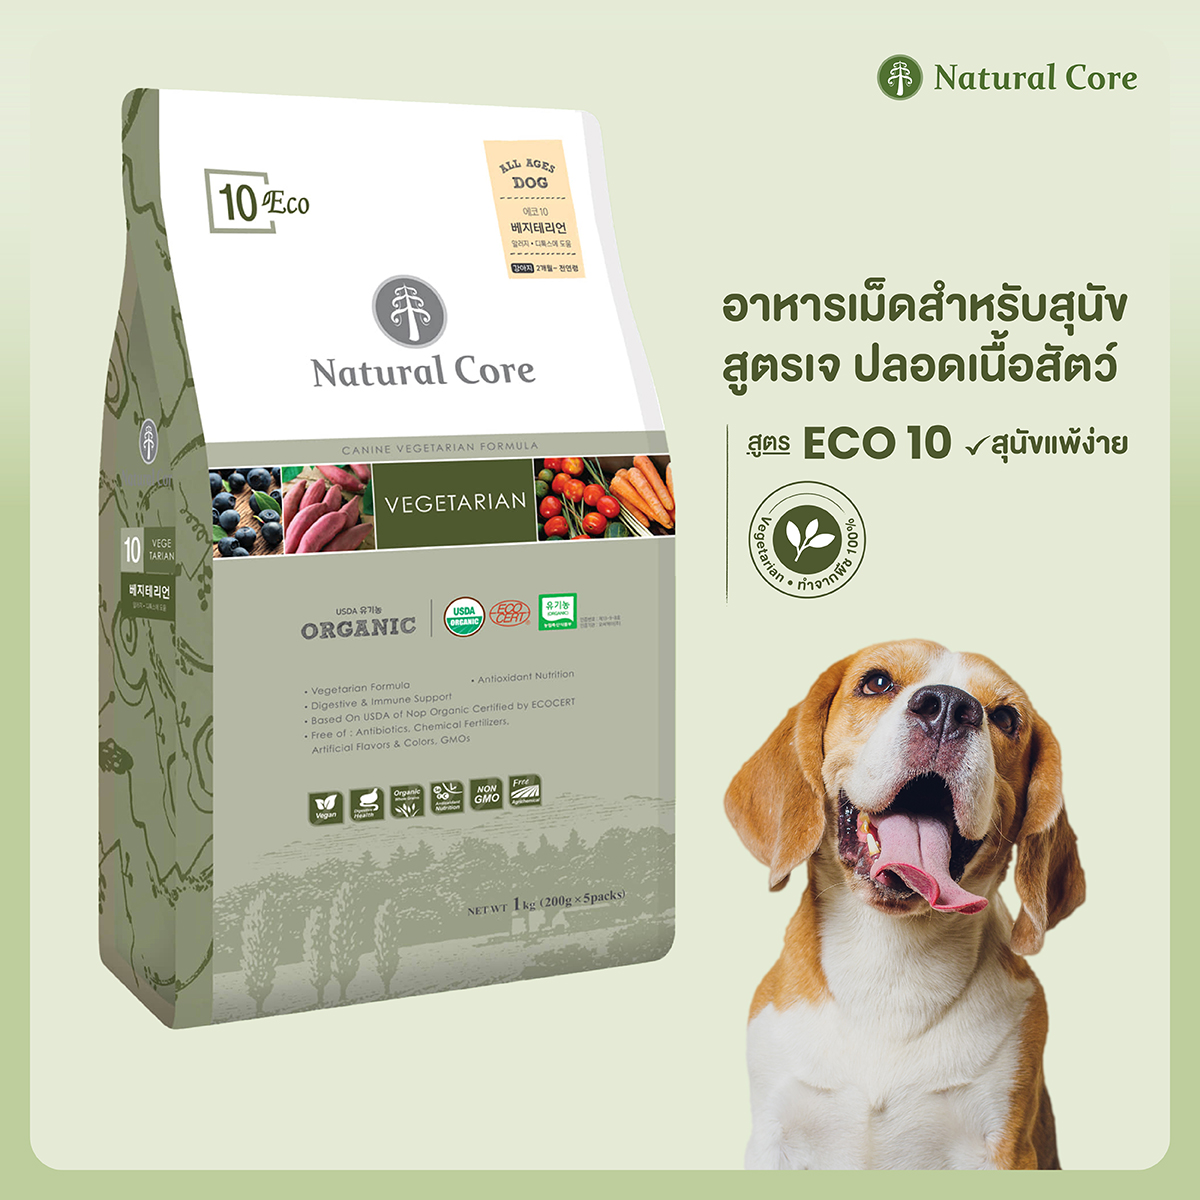 Natural Core อาหารเม็ดสำหรับสุนัข Eco10 Vegetarian สูตรอาหารมังสวิรัติ ขนาดเม็ด 9 มม. (1กก,6กก.)